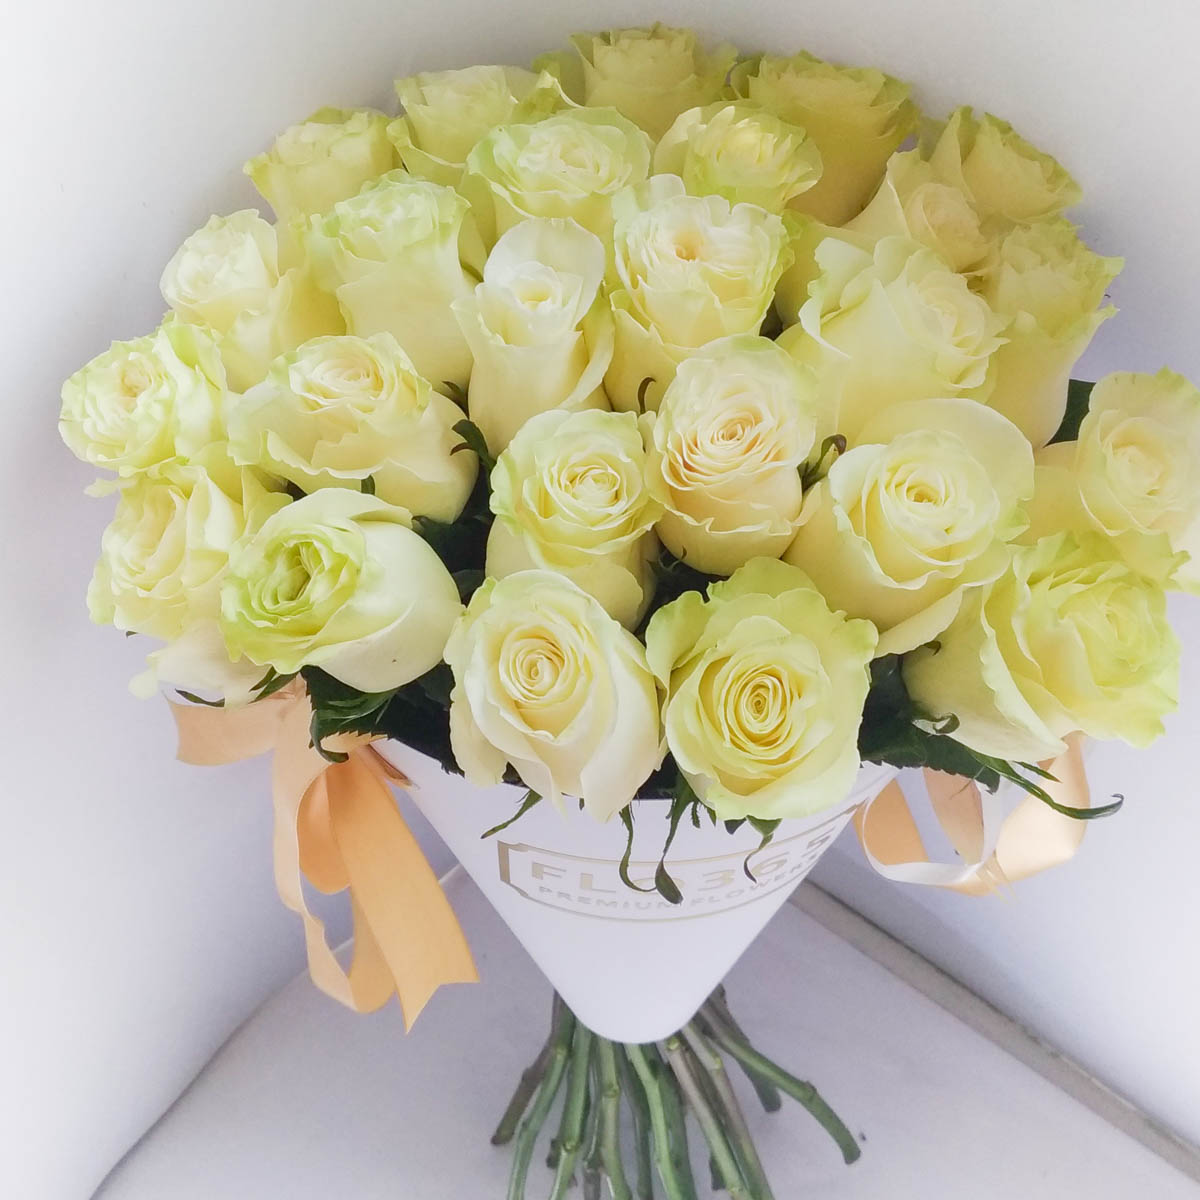 ХИТ ПРОДАЖ! 25 Белых роз в конверте - Фотография цветов перед доставкой 2